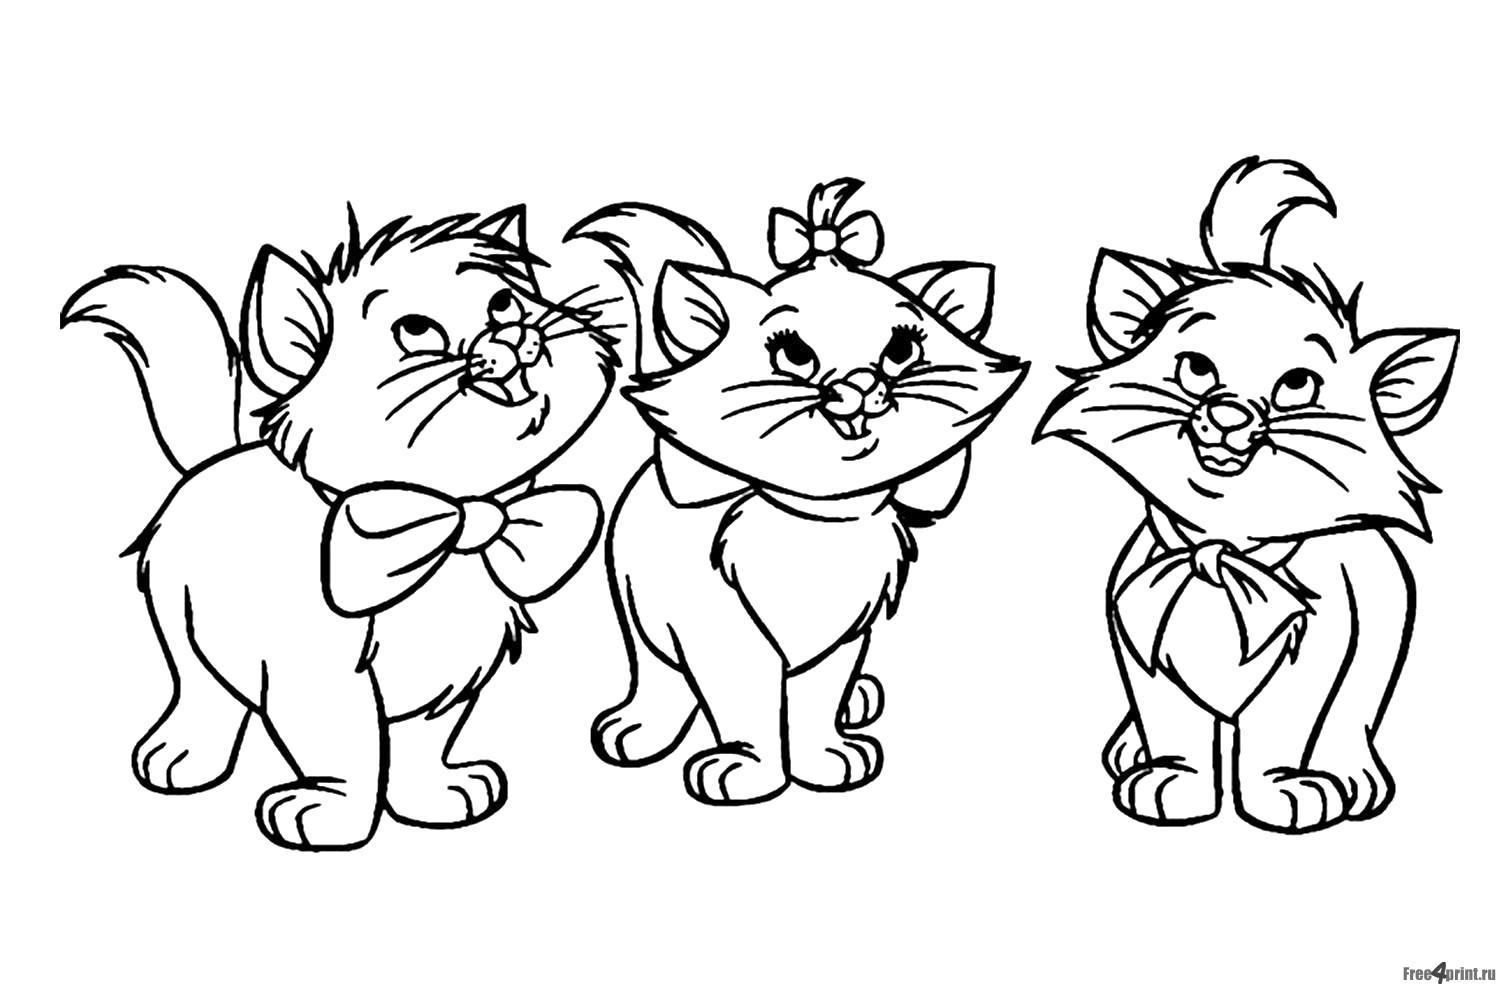 Раскраска Три котенка с бантиками. Домашние животные